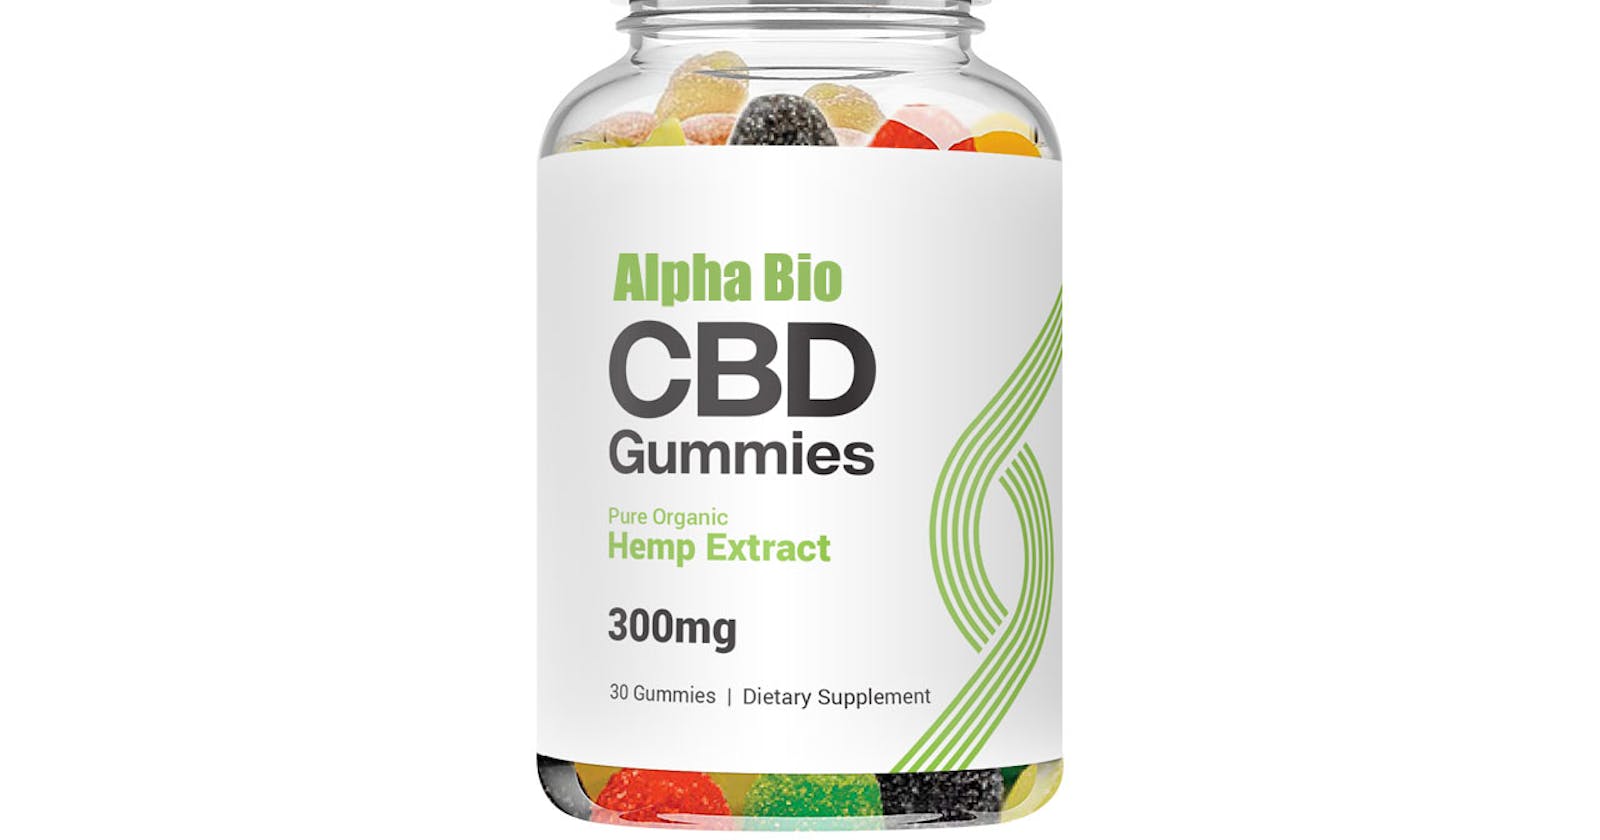 Alpha Bio CBD Gummies - World's No.1 Pain Relief Supplement?